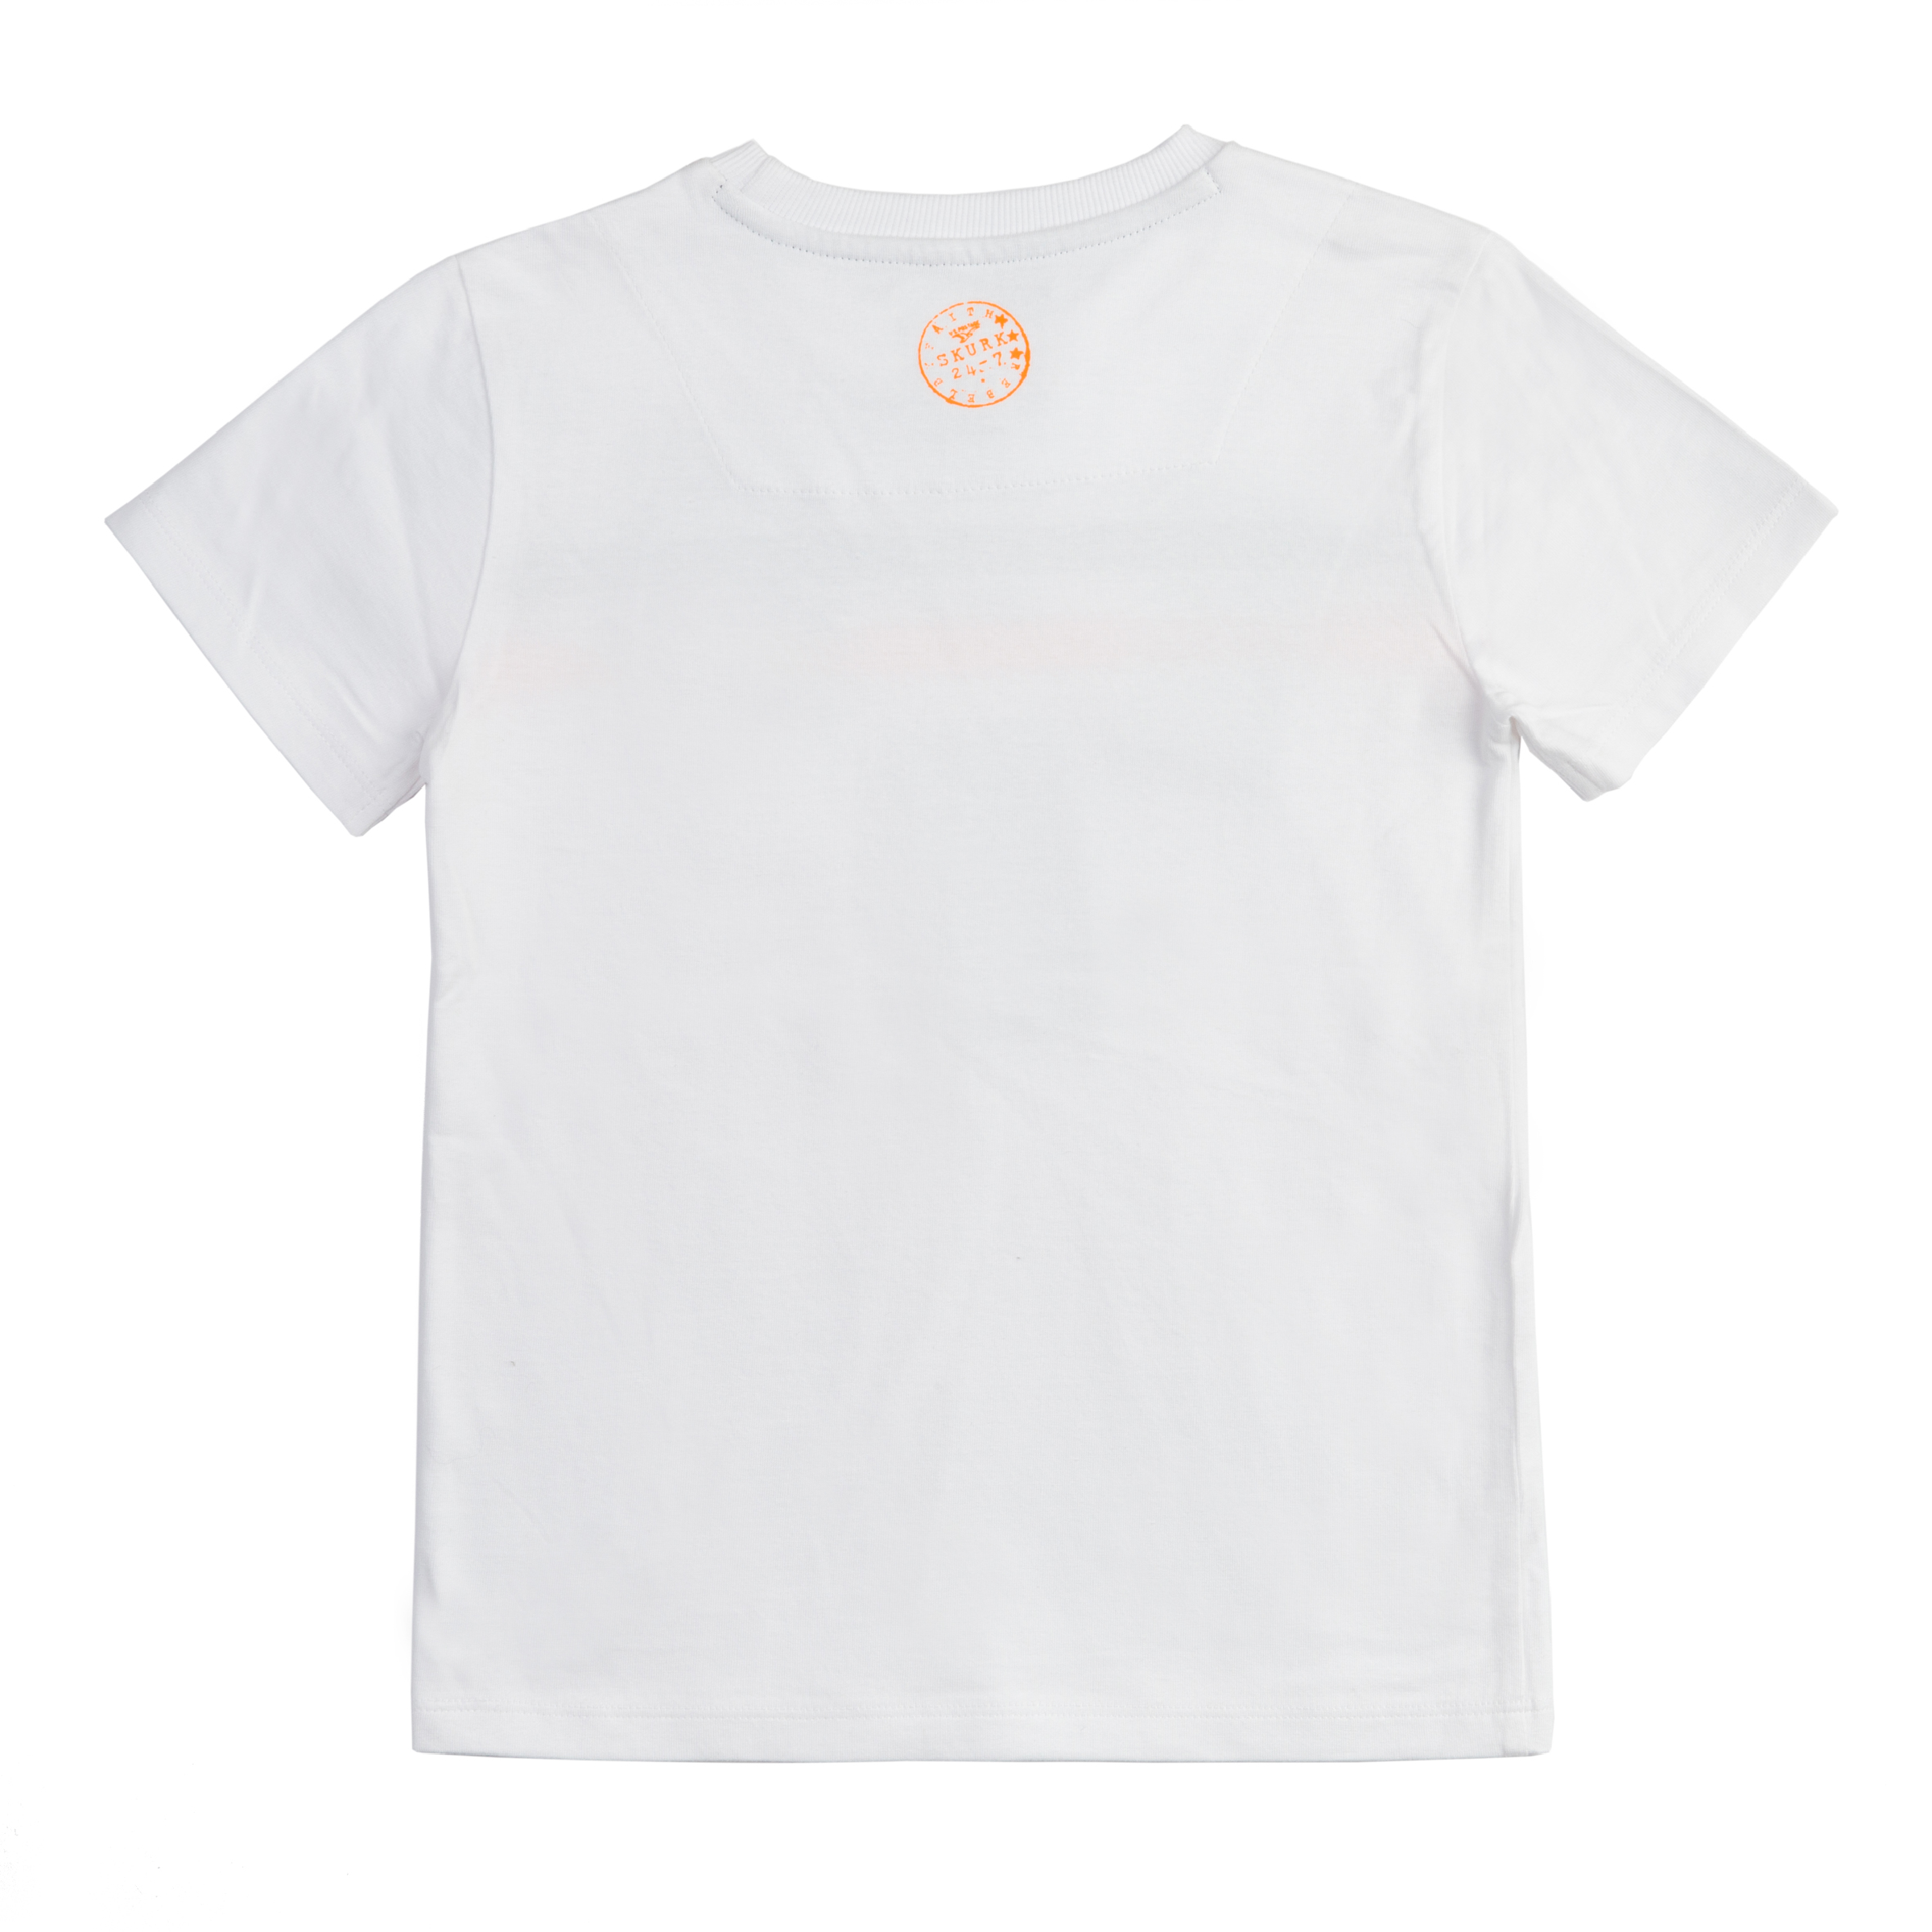 Jongens T-shirt Tra van Skurk in de kleur White in maat 164, 170.